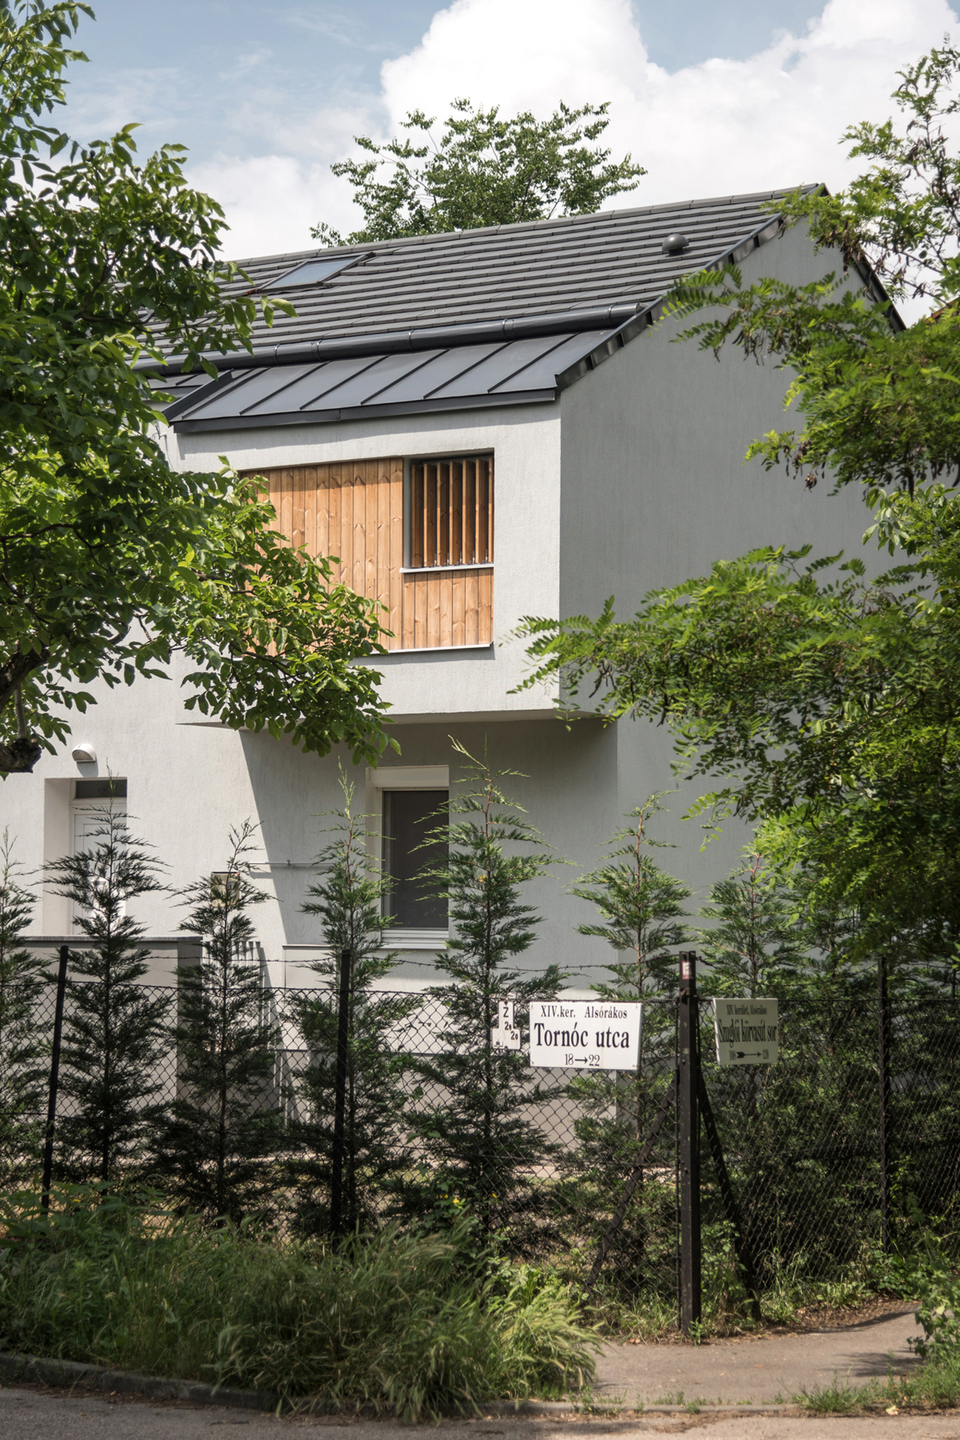 ZGL – Zuglói családi ház bővítés – építész: batlab architects – fotó: Juhász Norbert 